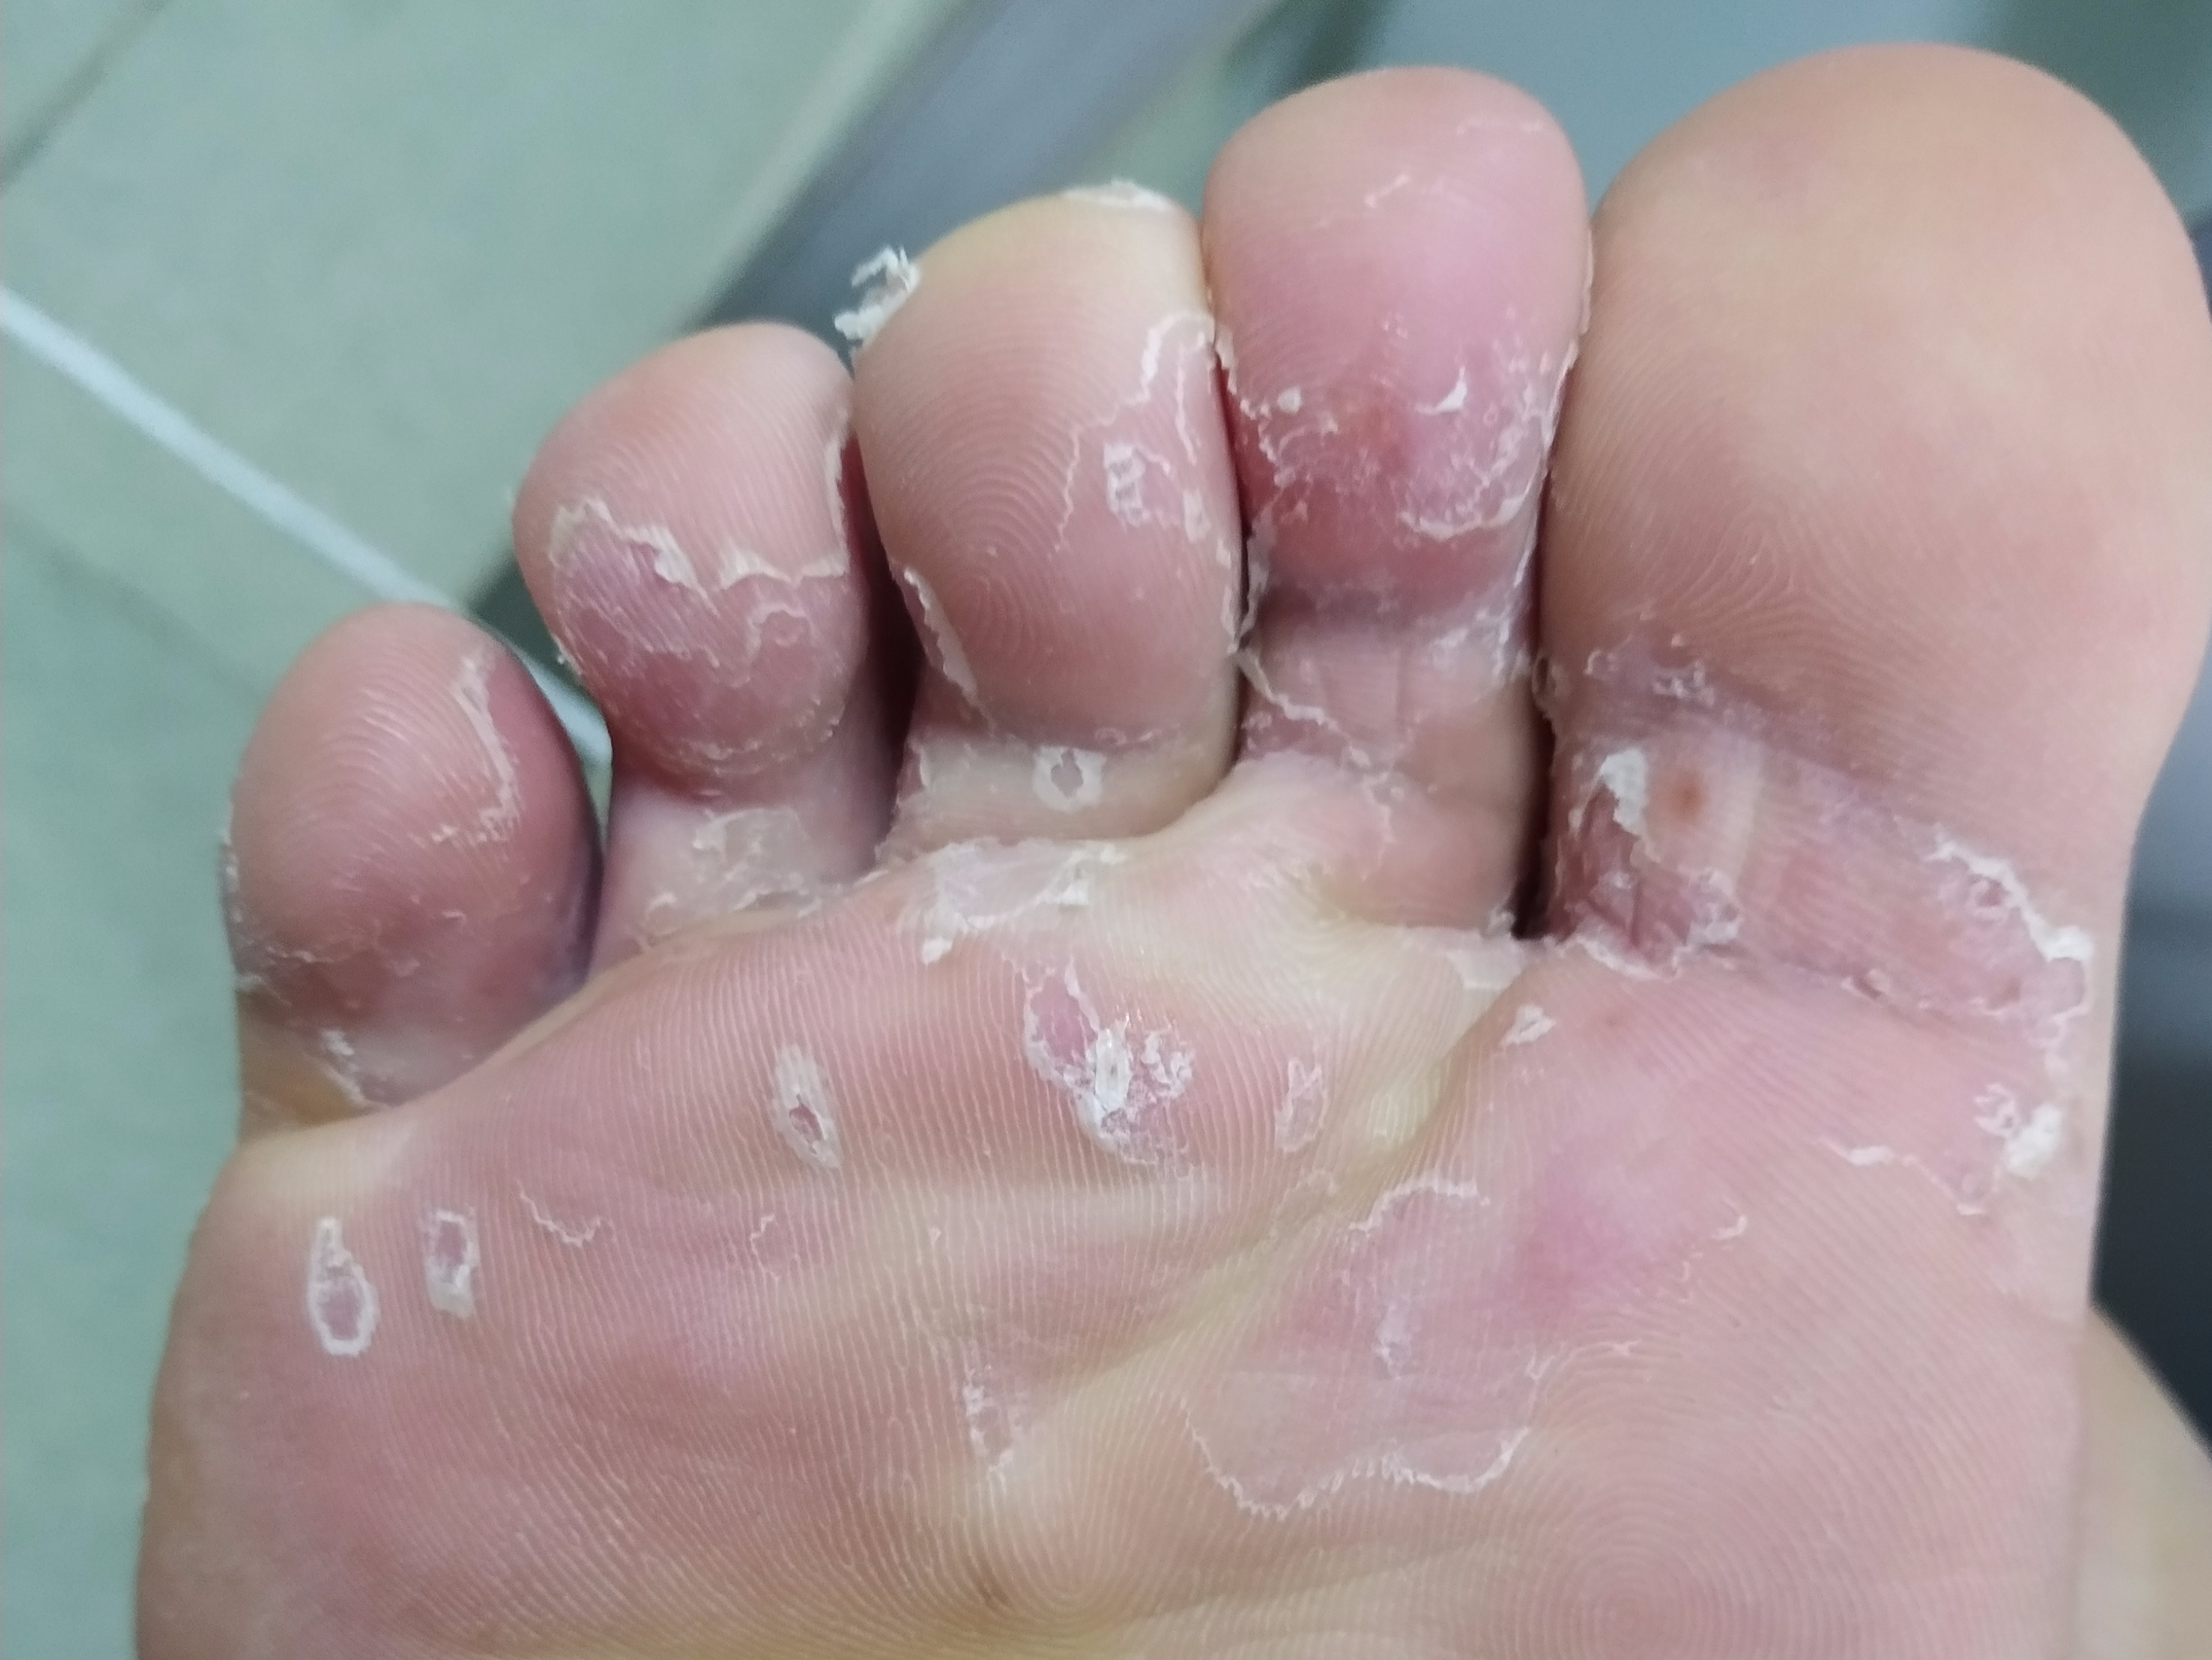 运动摩擦造成皮损这时便很容易感染真菌,造成糜烂型脚气,瘙痒感很强烈